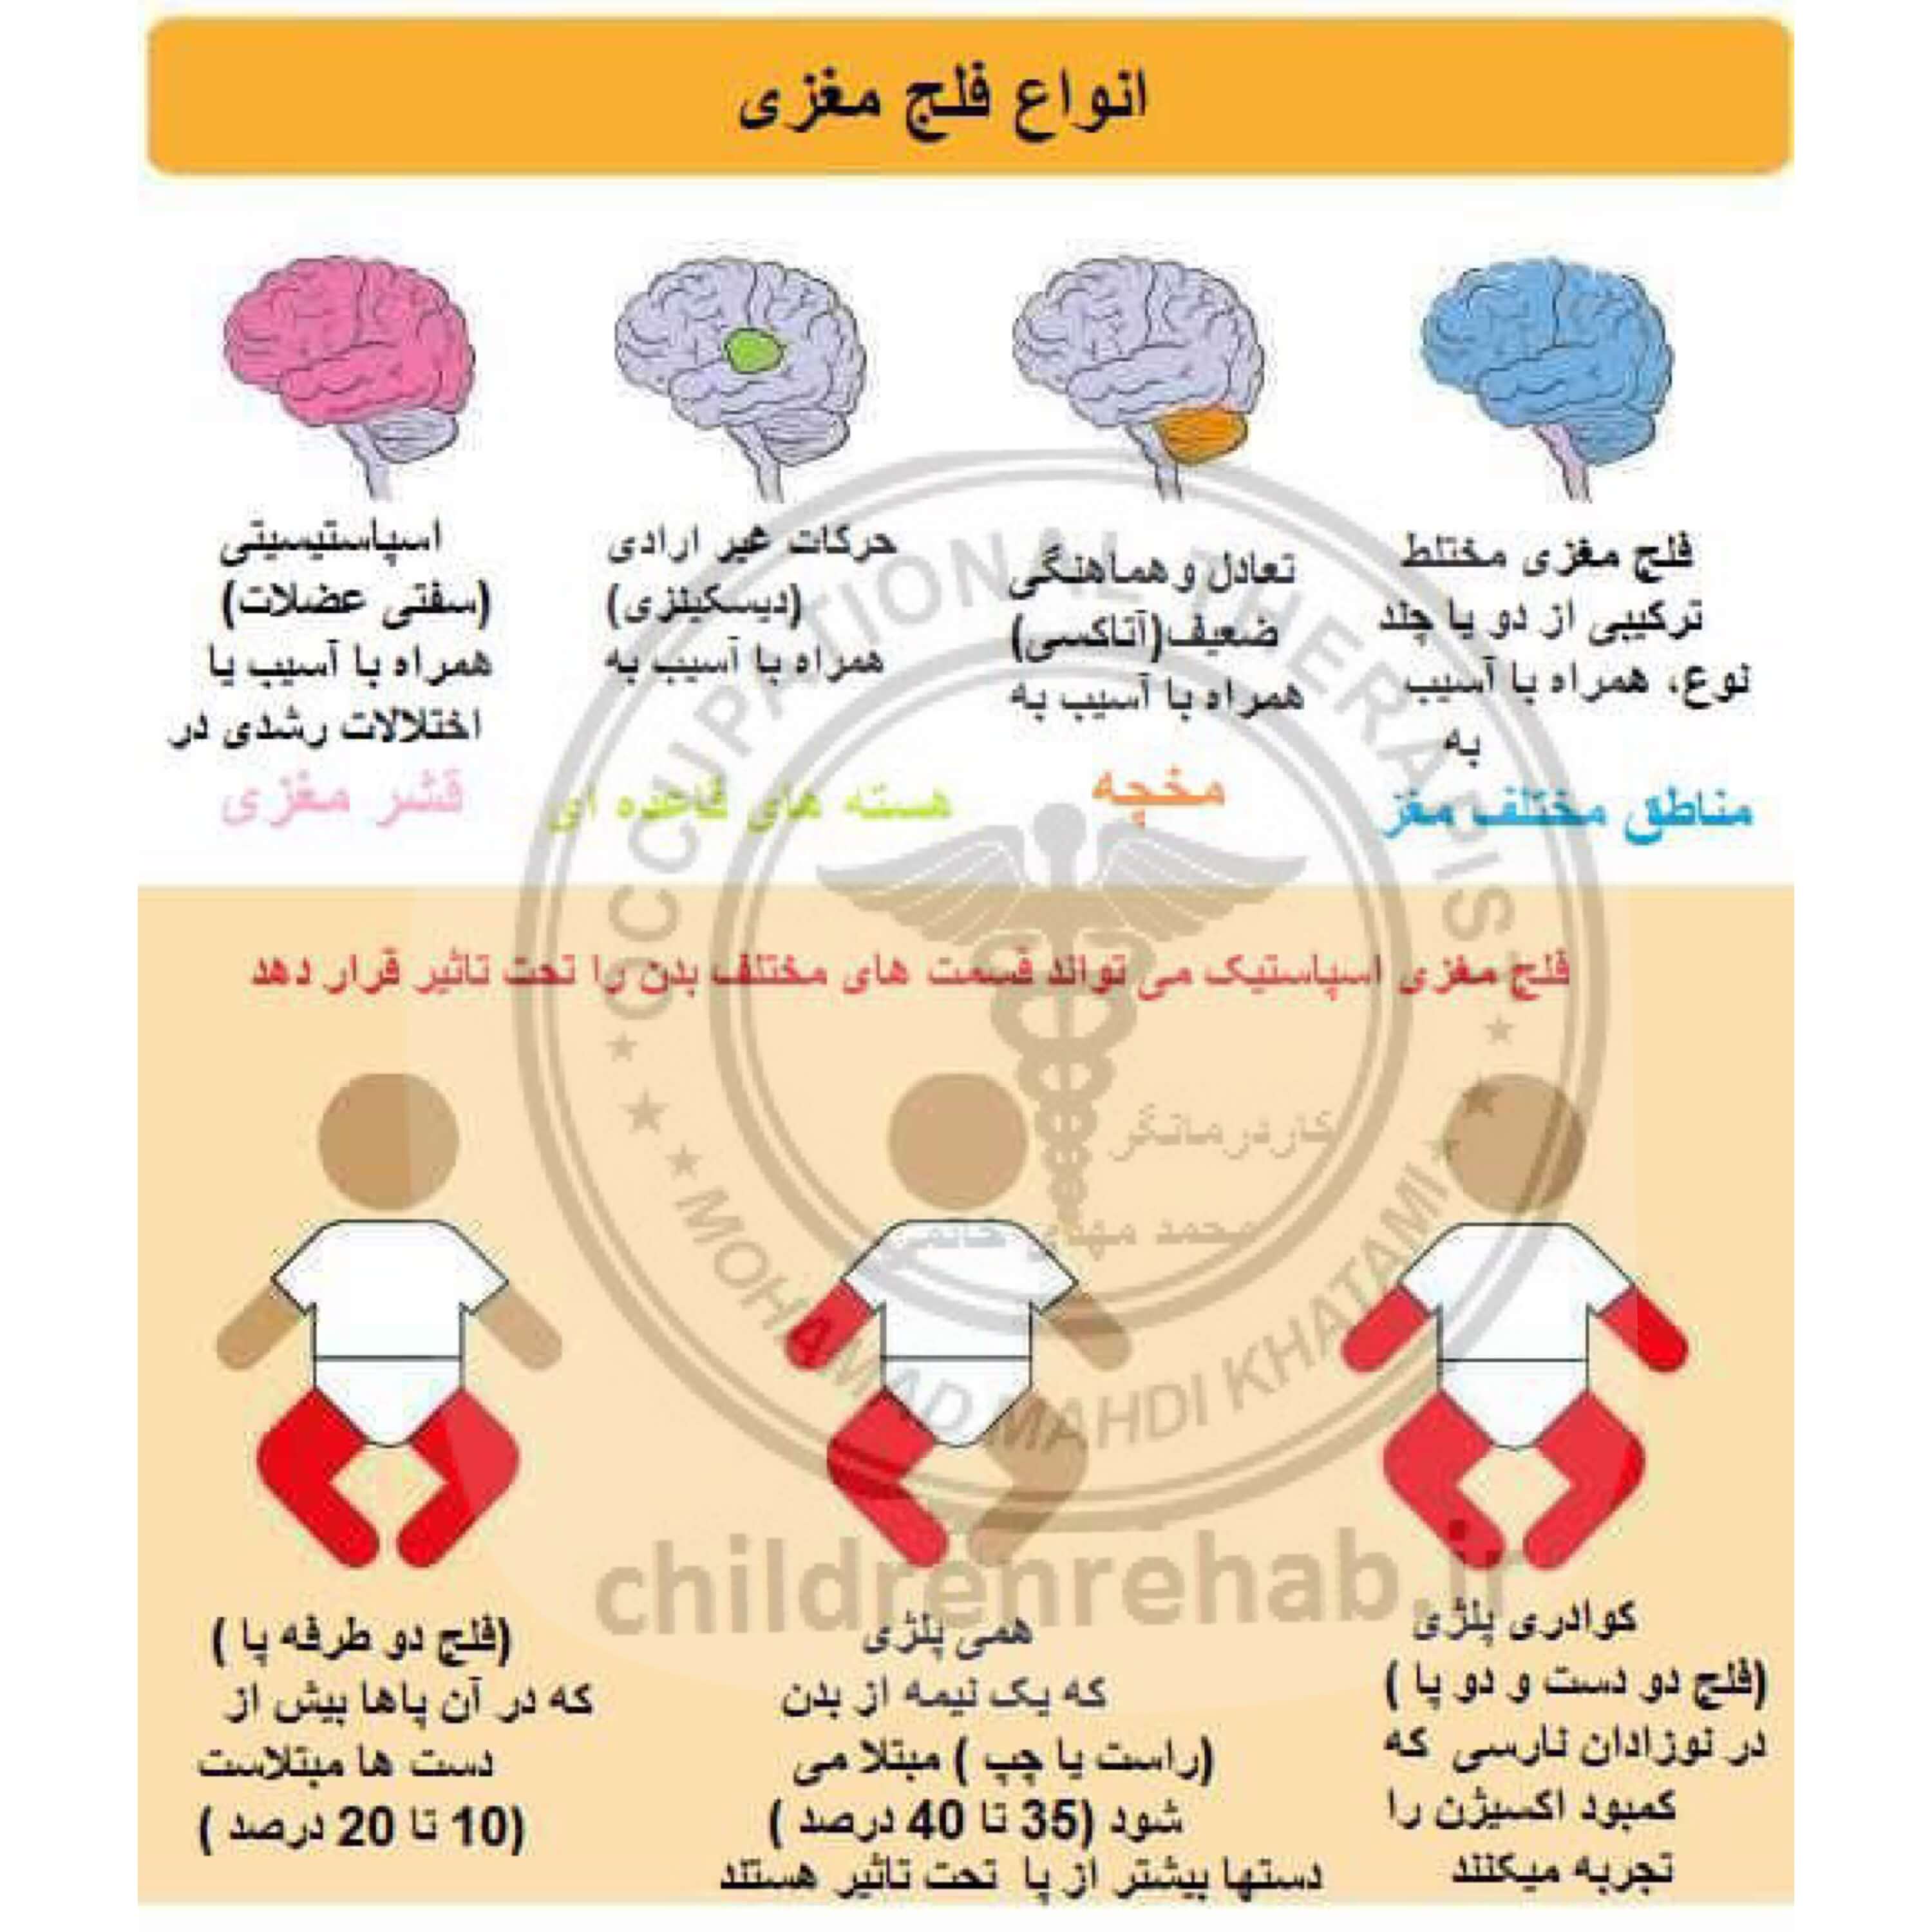 کاردرمانی در کودکان فلج مغزی-افلج مغزی